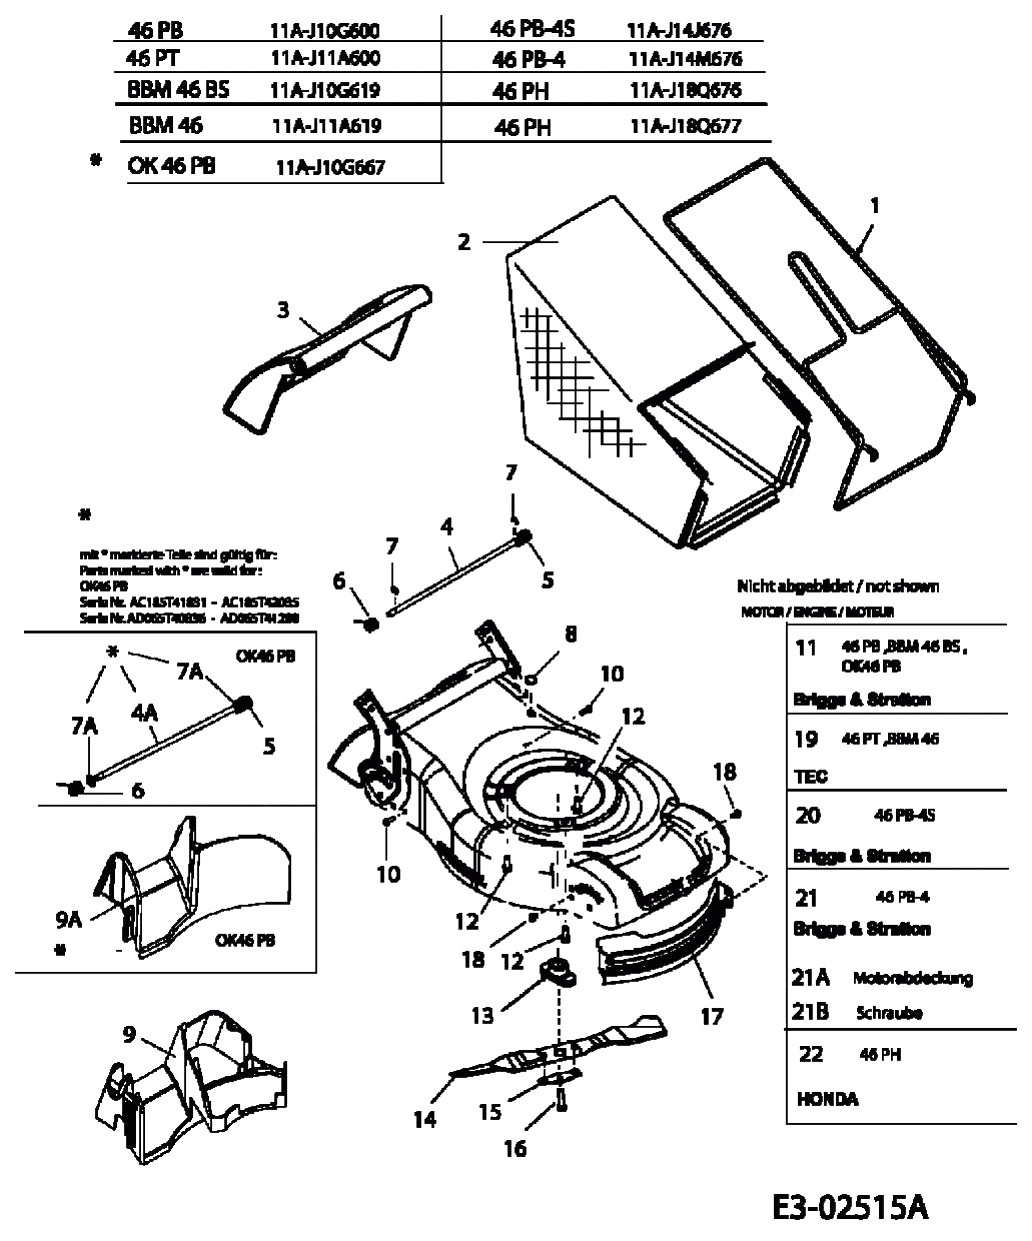 MTD Артикул 11A-J11A600 (год выпуска 2005). Травосборник, ножи, двигатель